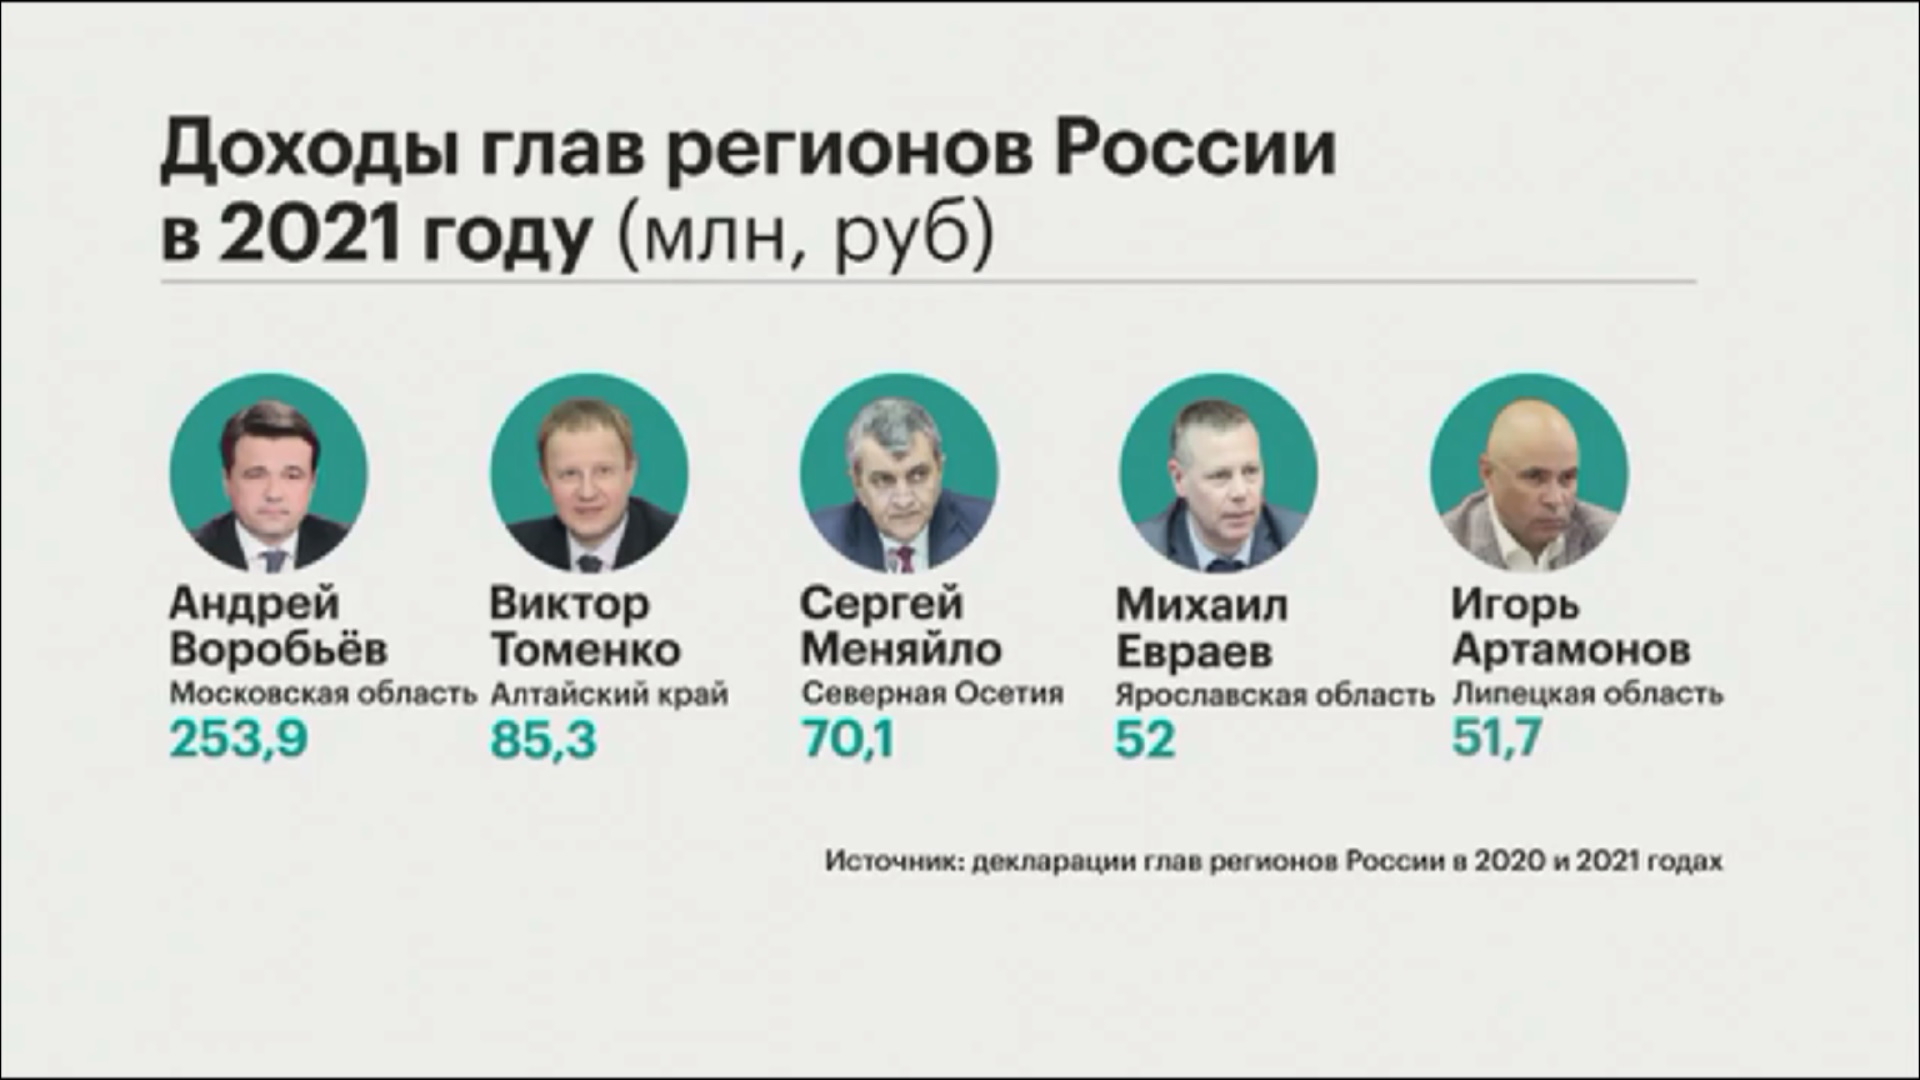 Кадыров выбыл из топ-5 богатейших глав регионов